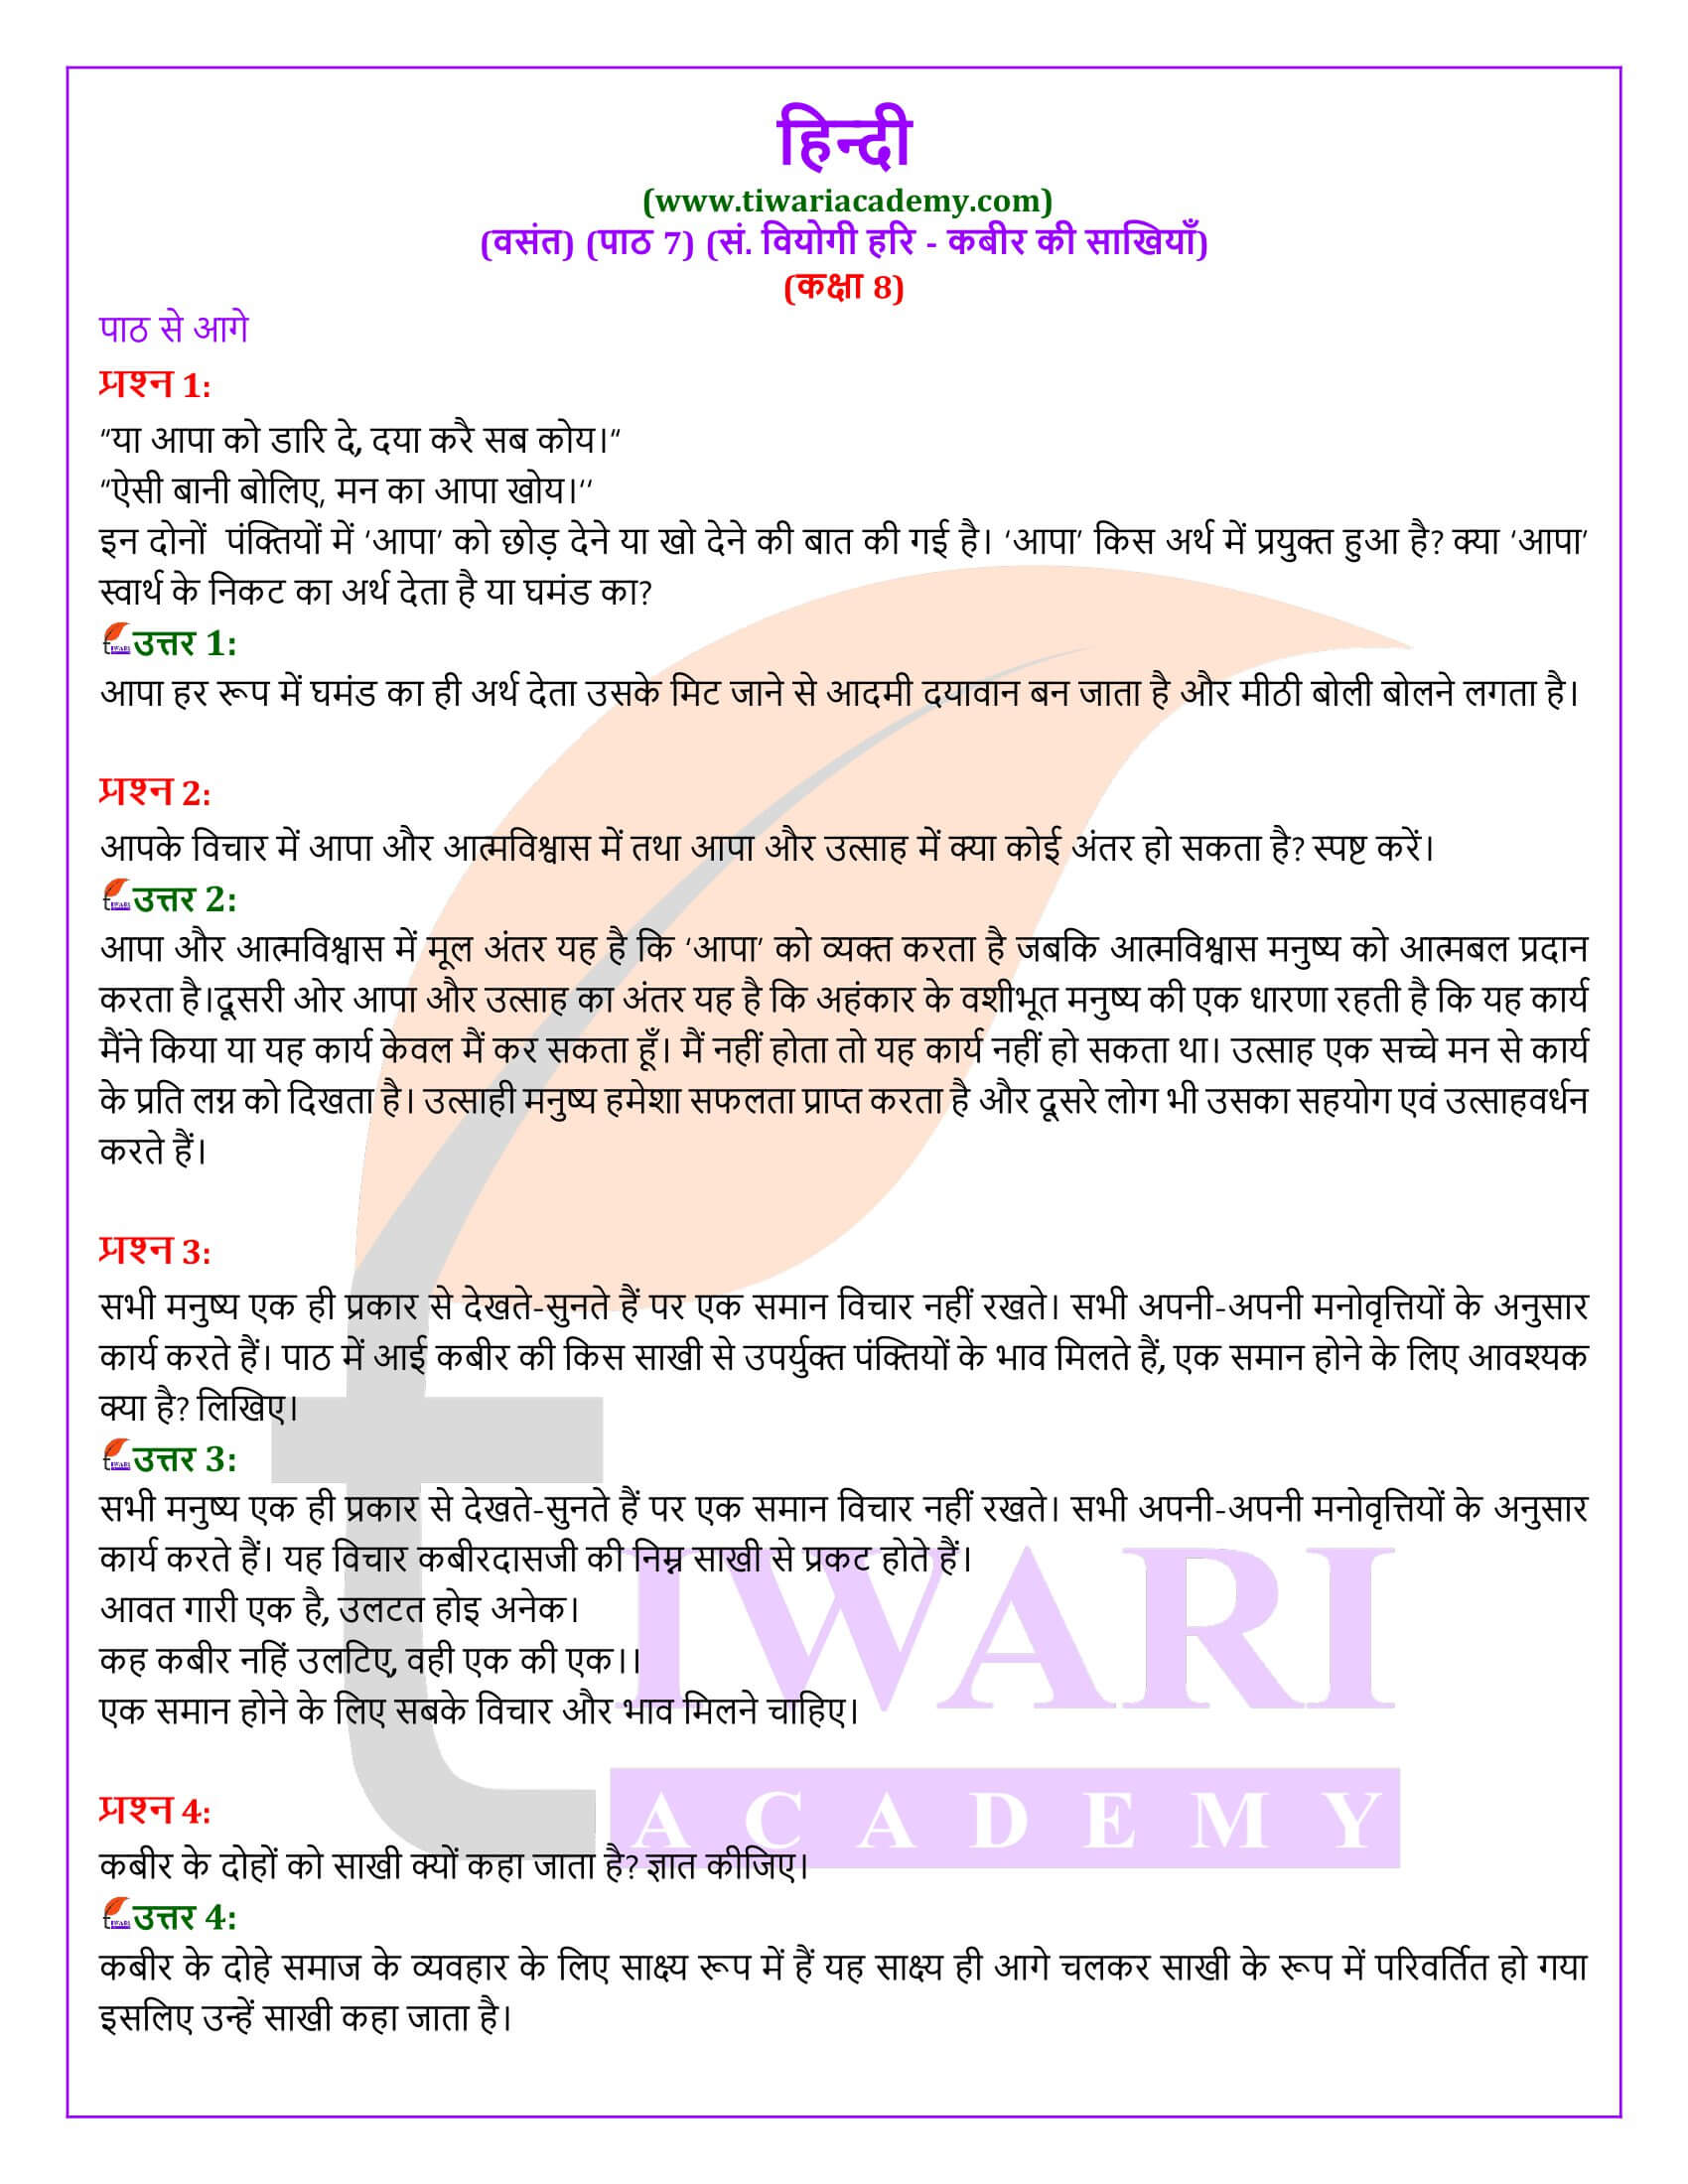 कक्षा 8 हिंदी वसंत अध्याय 7 कबीर की साखियाँ